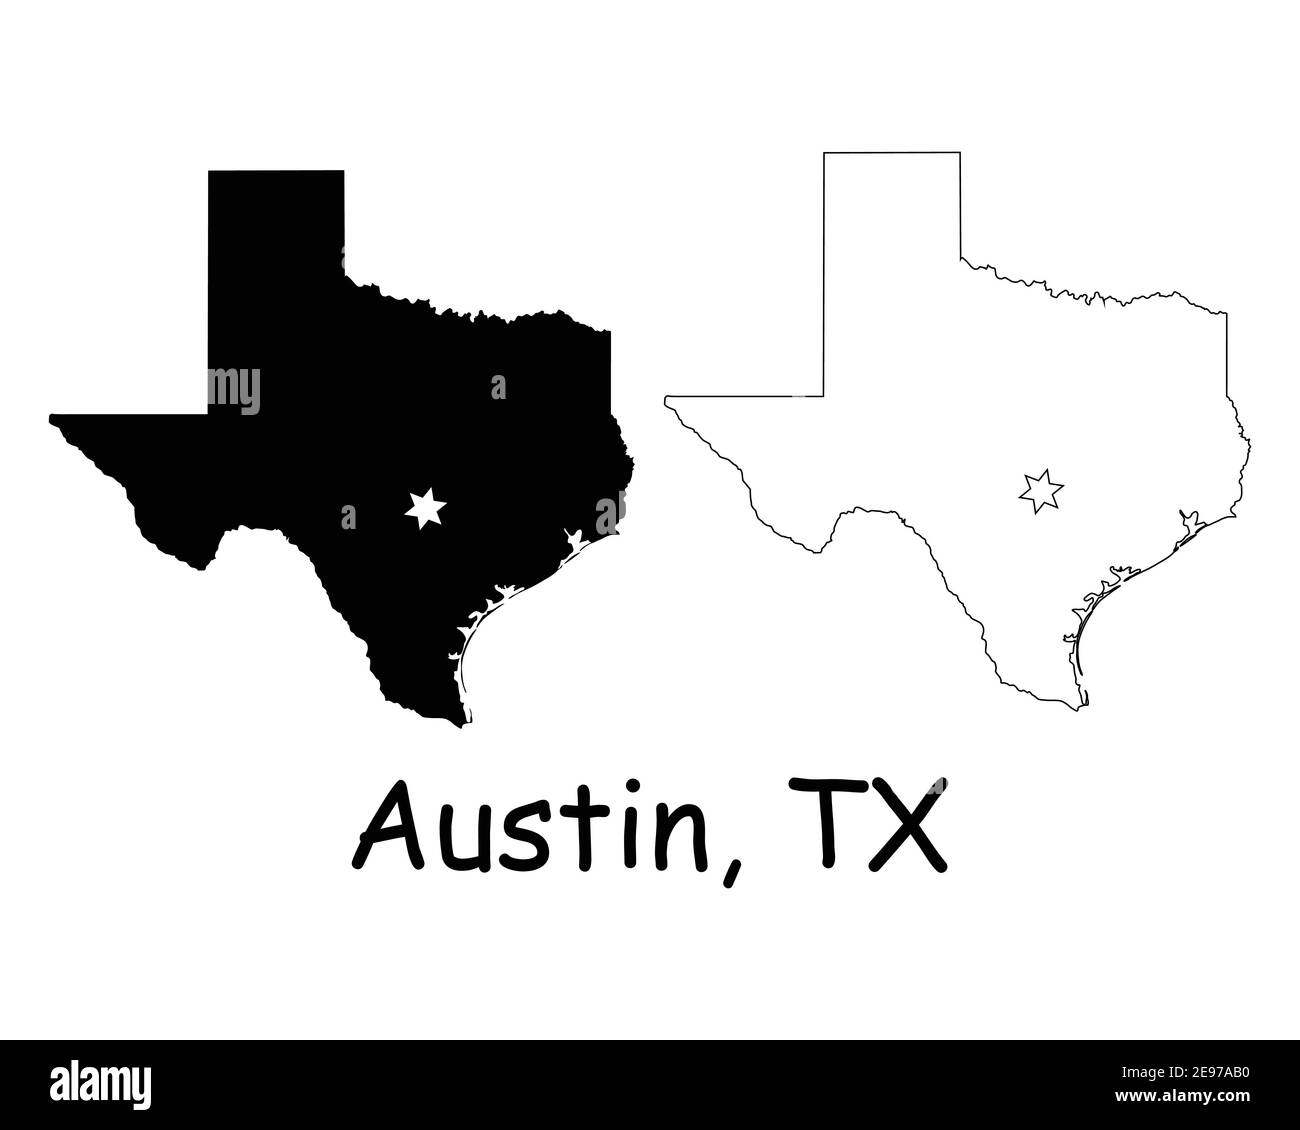 Texas Texas Texas Texas Texas Texas Texas Texas Texas state Map USA con Capital City Star ad Austin. Silhouette nera e mappe isolate su sfondo bianco. Vettore EPS Illustrazione Vettoriale